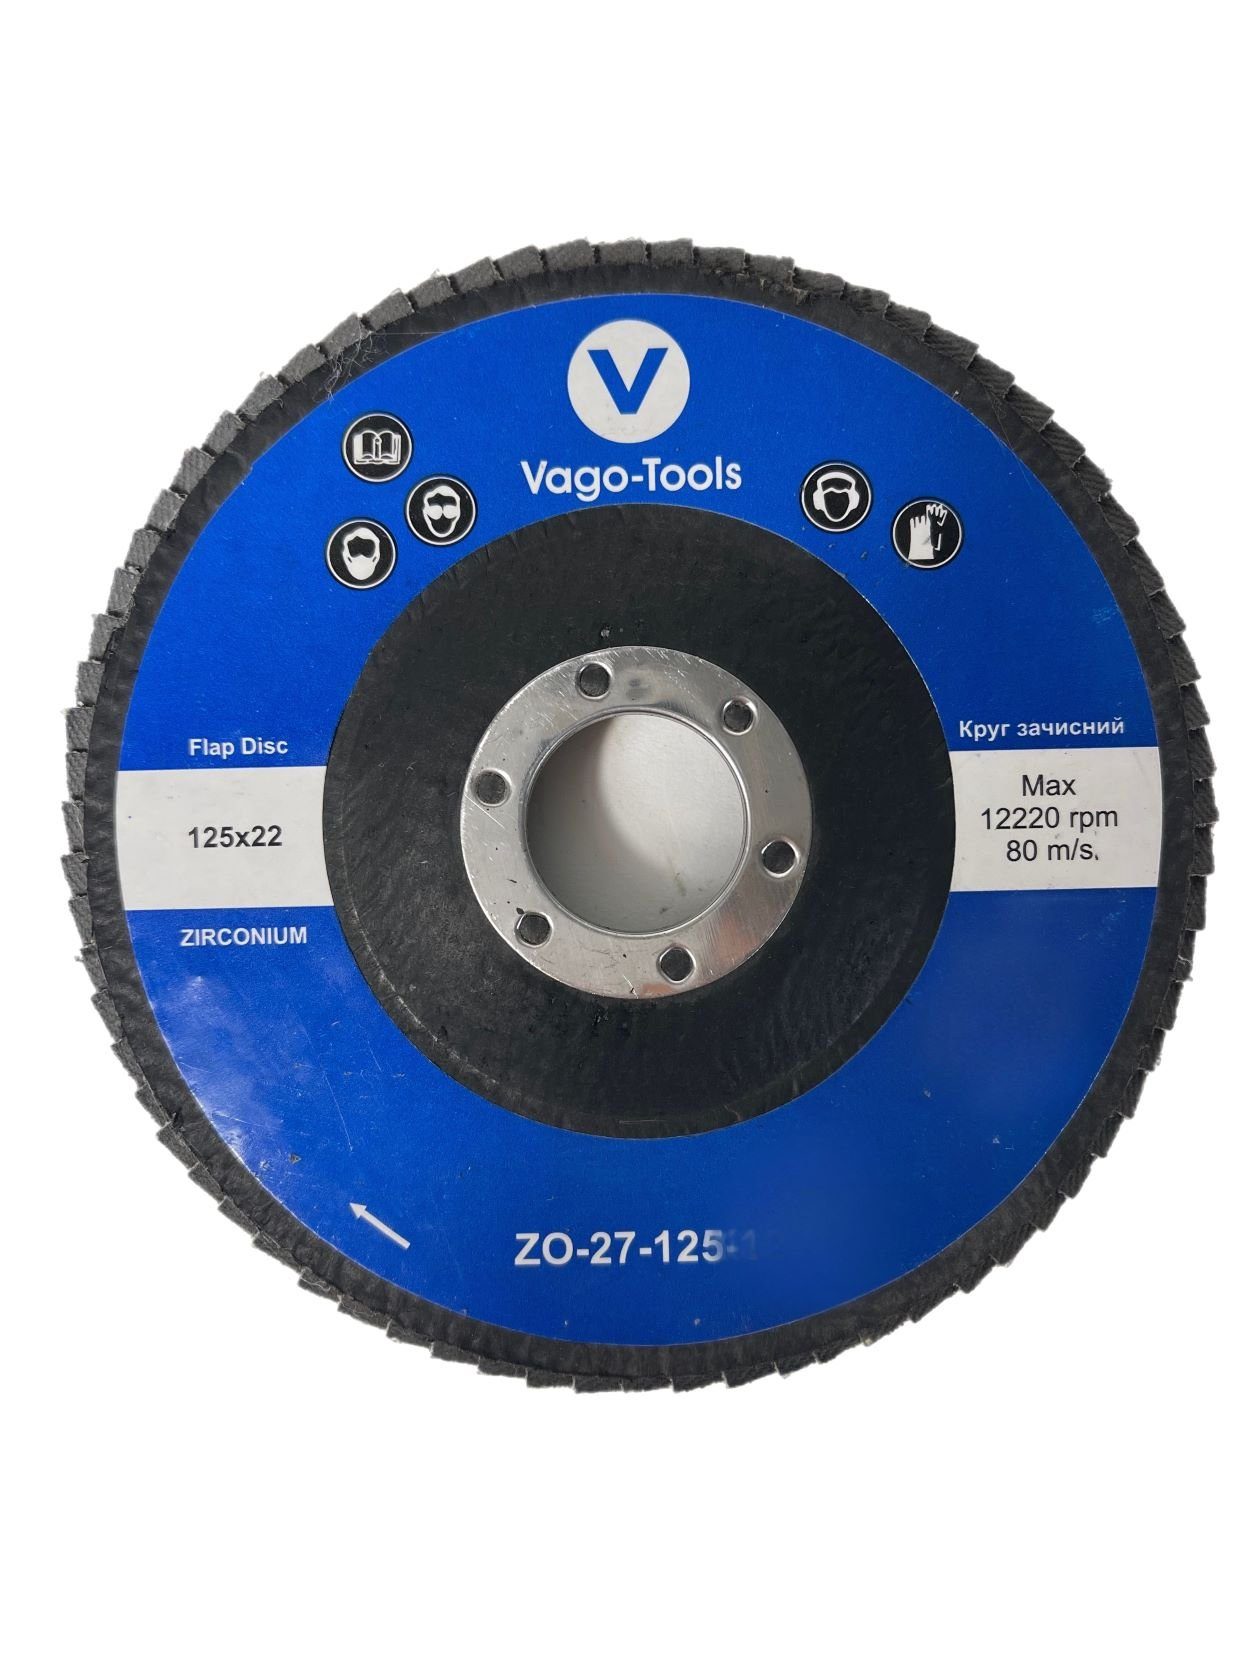 VaGo-Tools Schleifscheibe Fächerschleifscheiben 125mm P80 (Packung) 50x, Blau flach